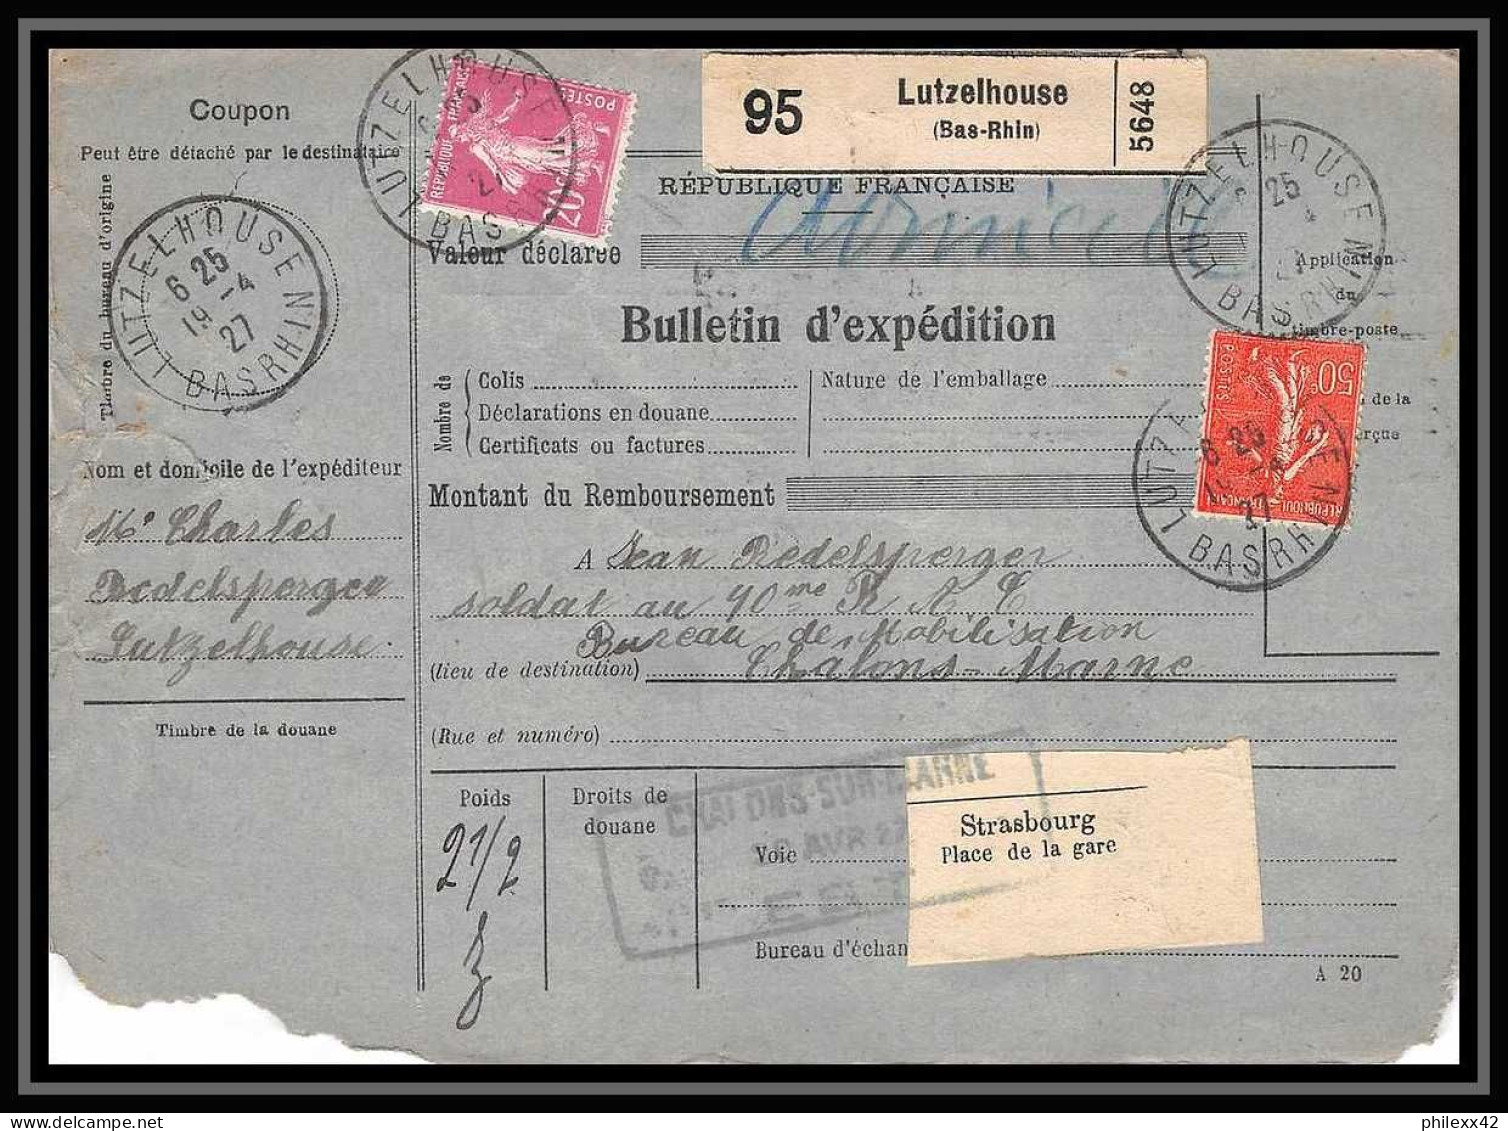 25095 Bulletin D'expédition France Colis Postaux Fiscal Bas Rhin - 1927 Lutzelhouse Merson 145 Alsace-Lorraine  - Brieven & Documenten